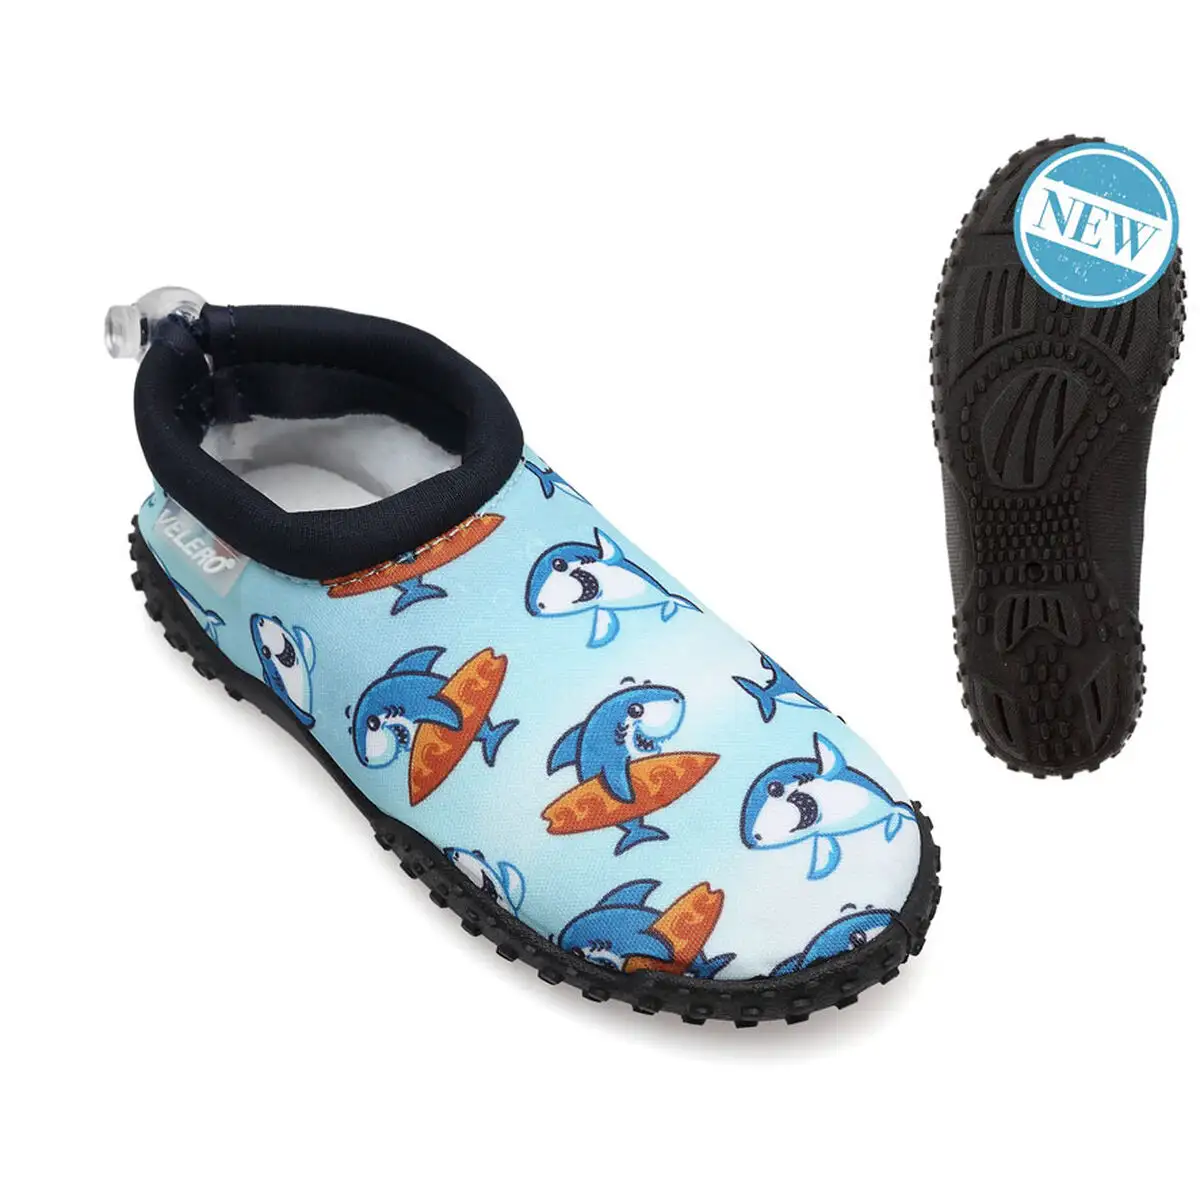 Chaussures aquatiques pour enfants bleu requin_9367. DIAYTAR SENEGAL - Où Choisir Devient une Découverte. Explorez notre boutique en ligne et trouvez des articles qui vous surprennent et vous ravissent à chaque clic.